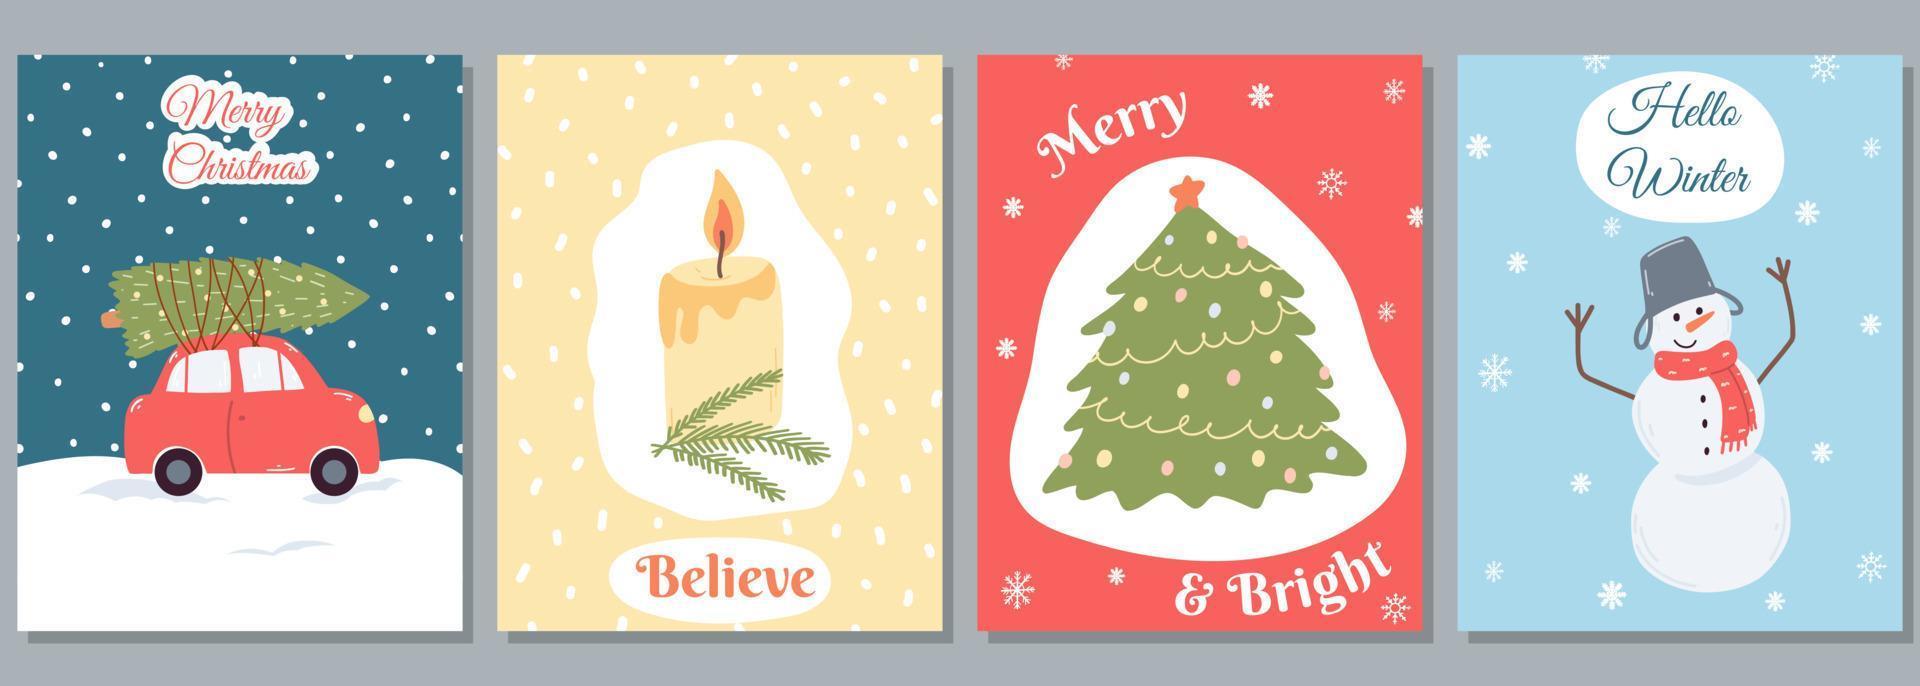 conjunto de cartão de saudação de natal e ano novo em estilo simples de desenho animado. ilustração vetorial desenhada à mão para cartões, impressão, pôster, modelo de mídia social vetor